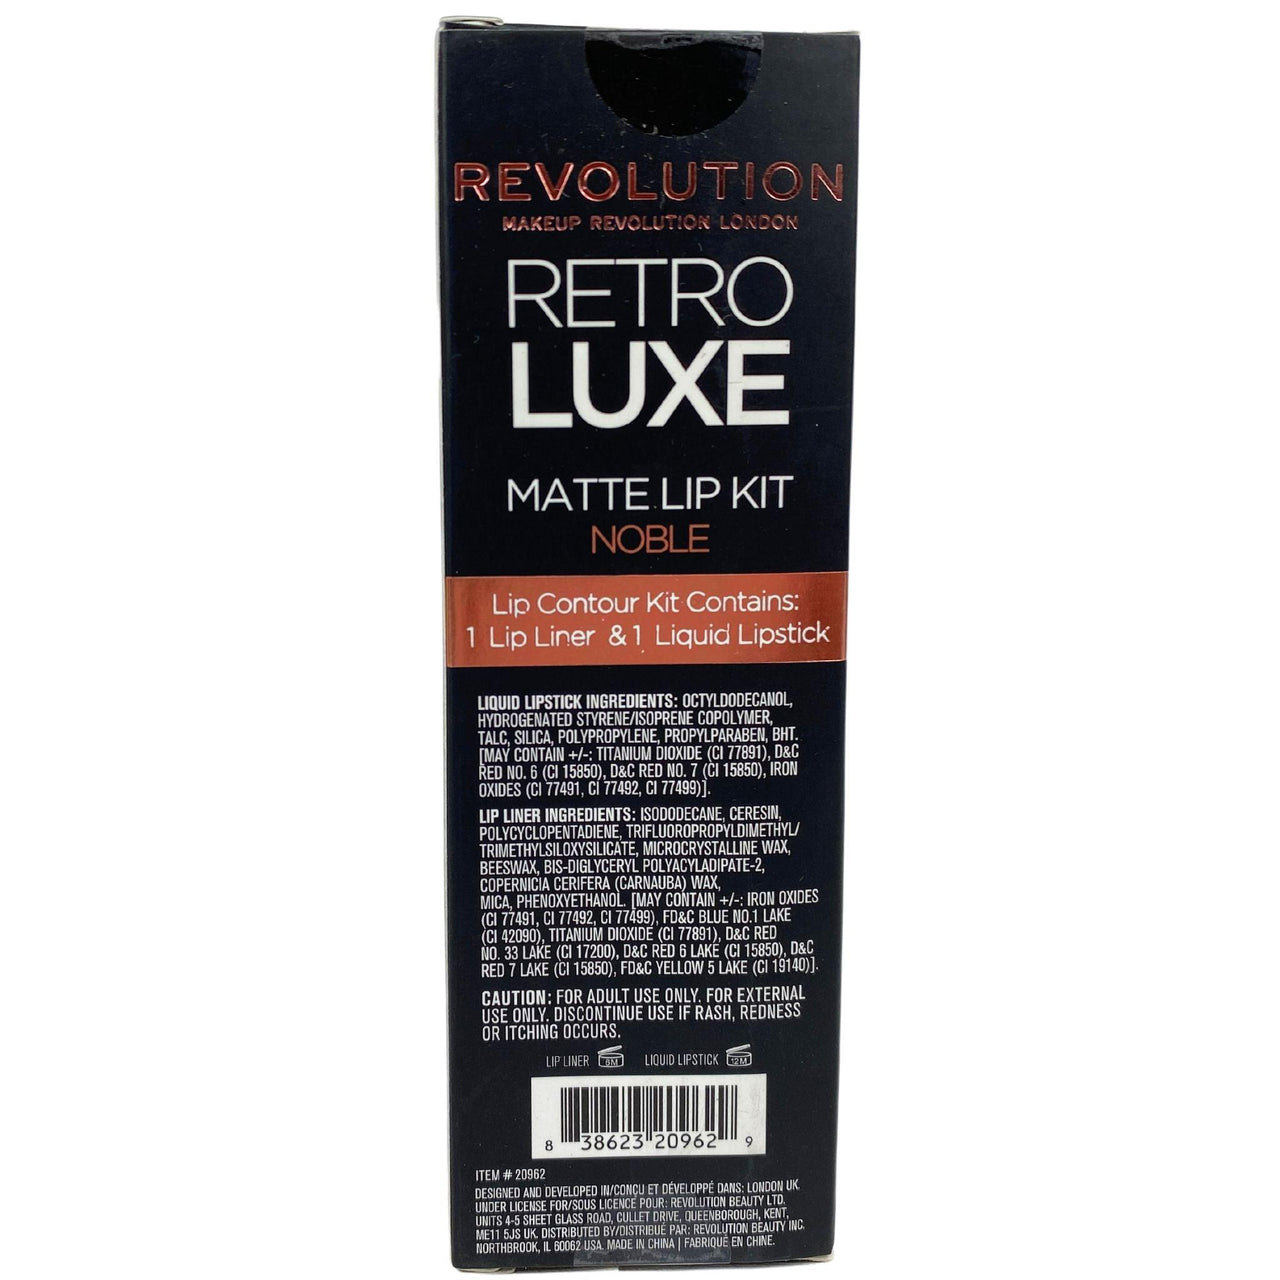 Revolution Retro Luxe Matte Lip Kit Lip Contour Kit Lip Pencil & Liquid Lipstick "NOBLE" (72 Pcs Lot) - Discount Wholesalers Inc